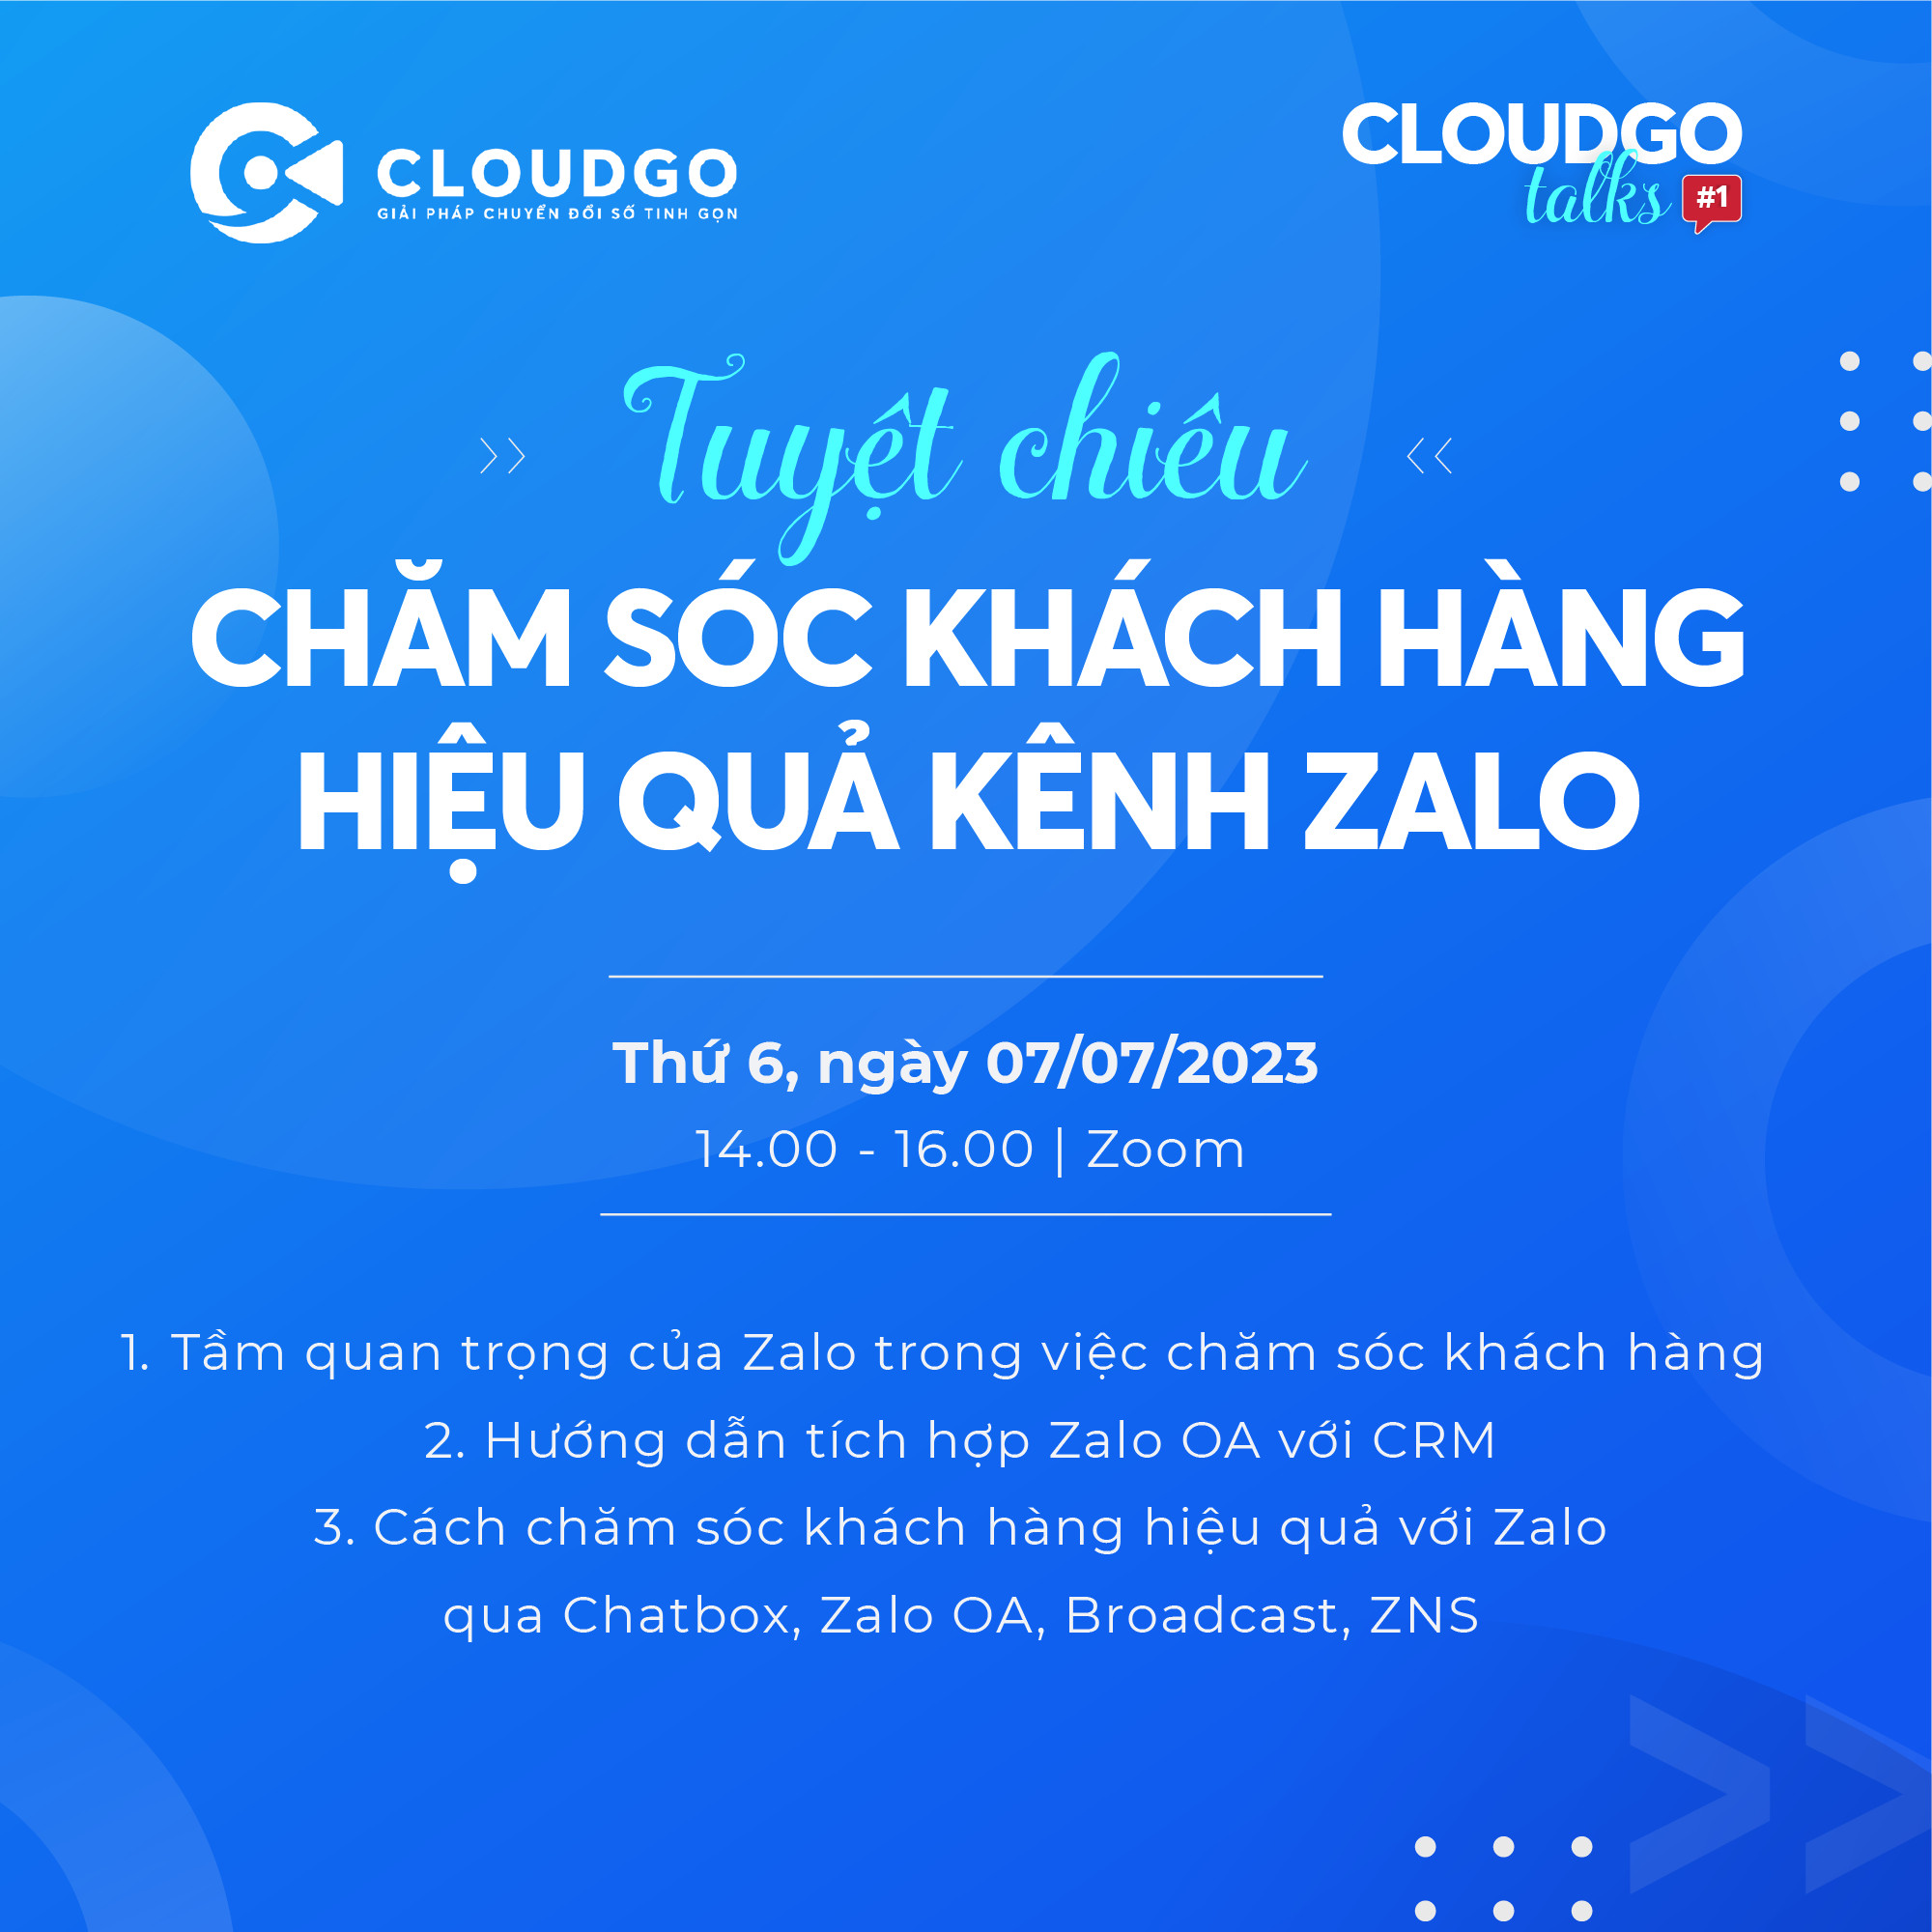 CloudGO Talks buổi #1